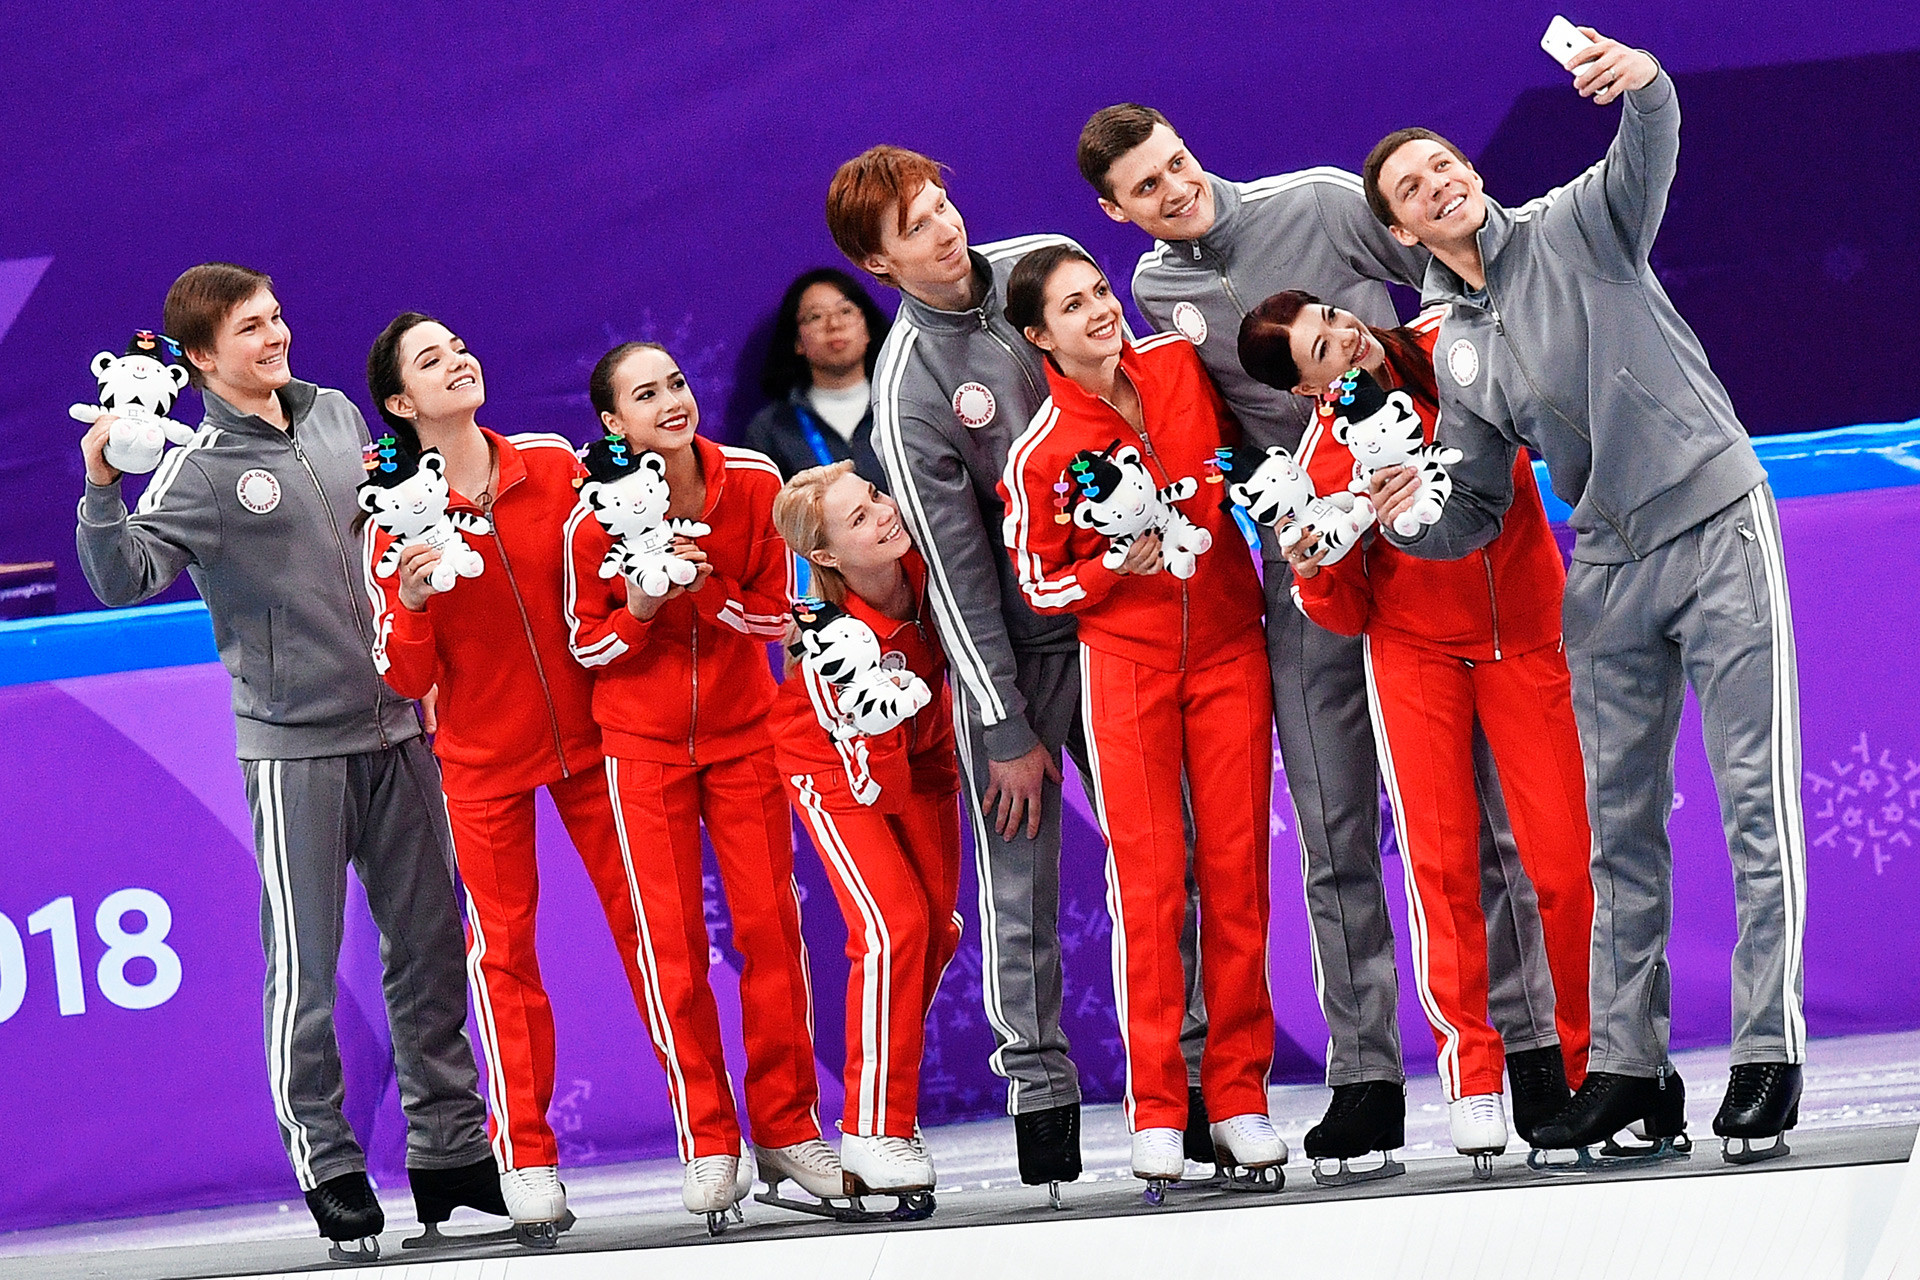 ロシアのフィギュアスケーター団体（左から右へ）：ミハイル・コリャダ、エフゲニア・メドベージェワ、アリーナ・ザギトワ、エフゲニア・タラソワ、ウラジーミル・モロゾフ、ナタリア・ザビヤコ、アレクサンドル・エンベルト、エカテリーナ・ボブロワ、ドミトリー・ソロヴィヨフ。